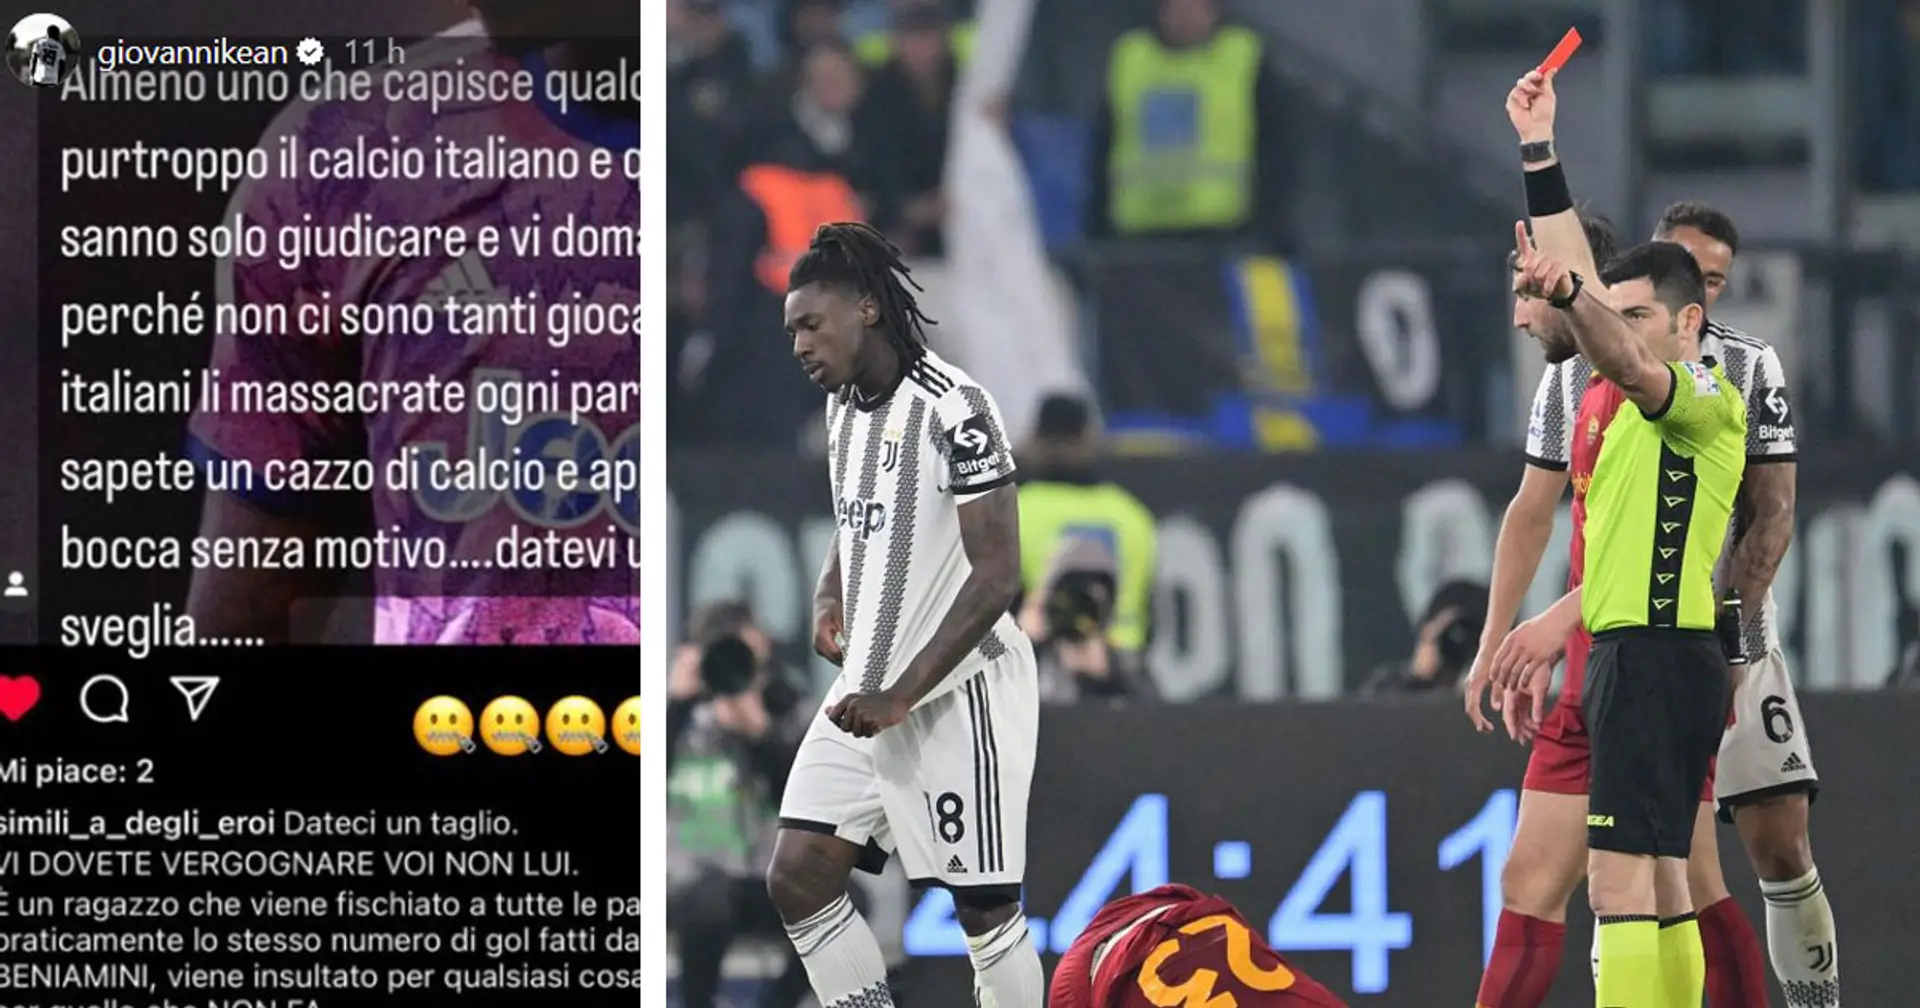 Il fratello di Kean risponde duramente alle critiche dopo Roma-Juventus: "Almeno uno che capisce c'è"